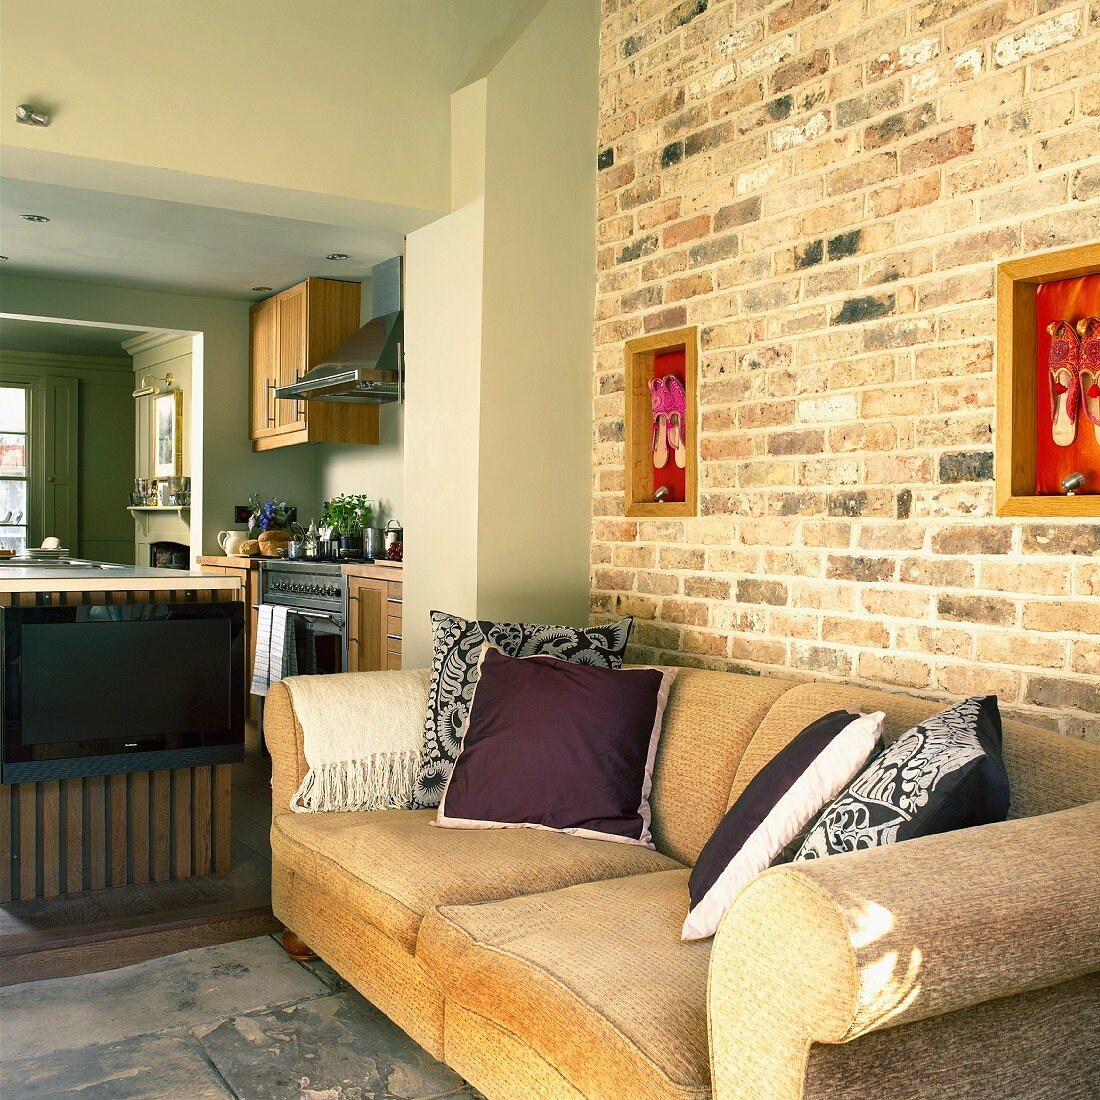 Zimmerflucht in einem Landhaus: Wohnzimmer mit Sofa an einer Ziegelwand, Küche mit Mittelblock und Essecke